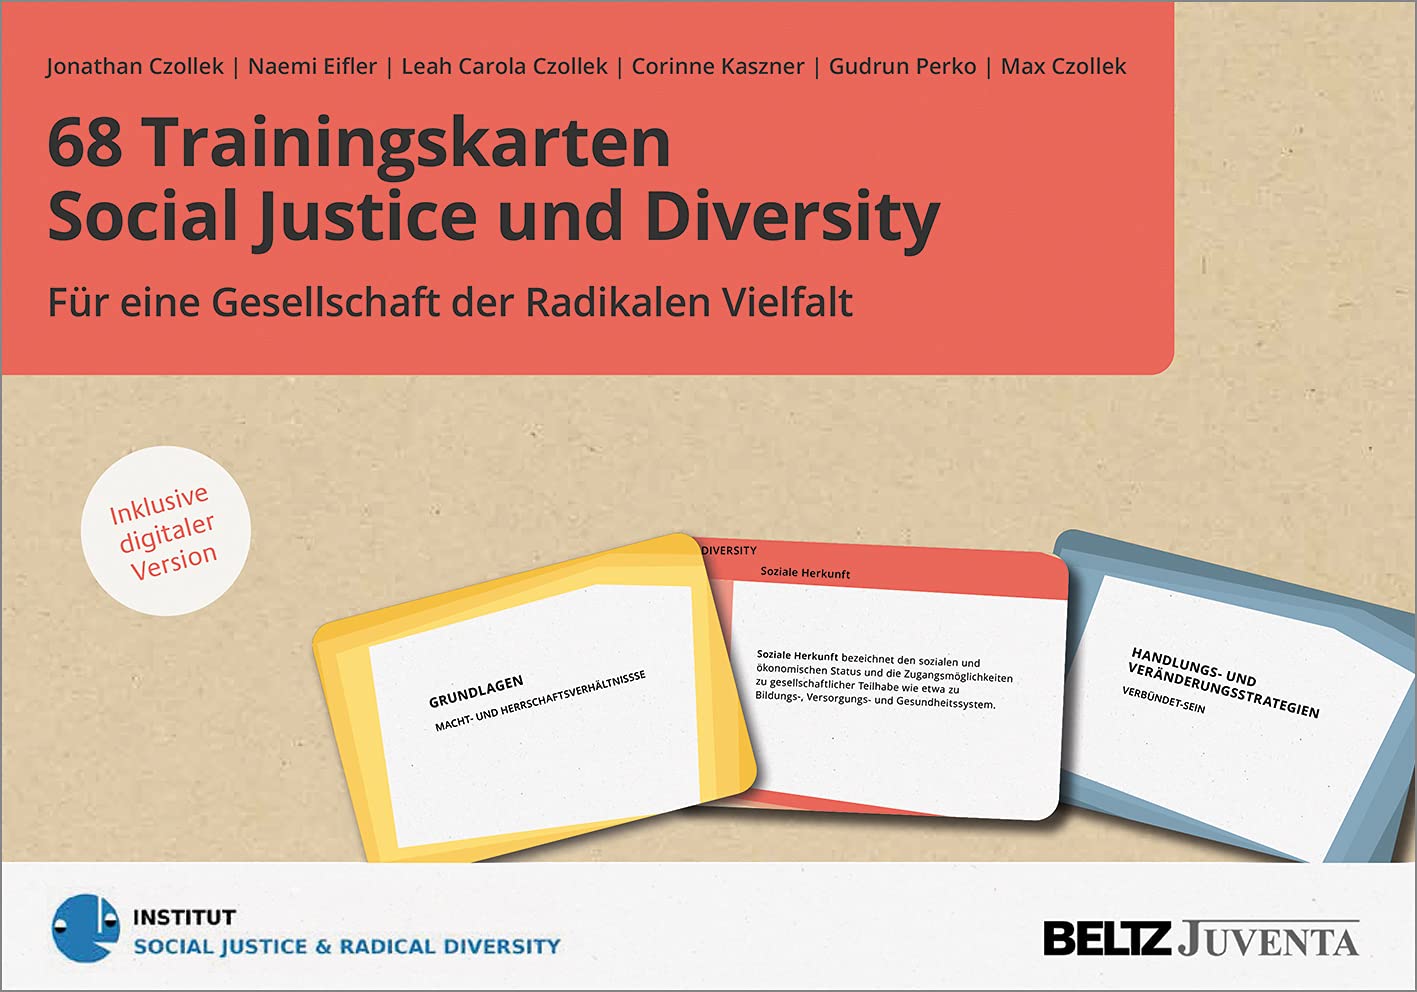 68 Trainingskarten Social Justice und Diversity: Für eine Gesellschaft der Radikalen Vielfalt. Inklusive digitaler Version